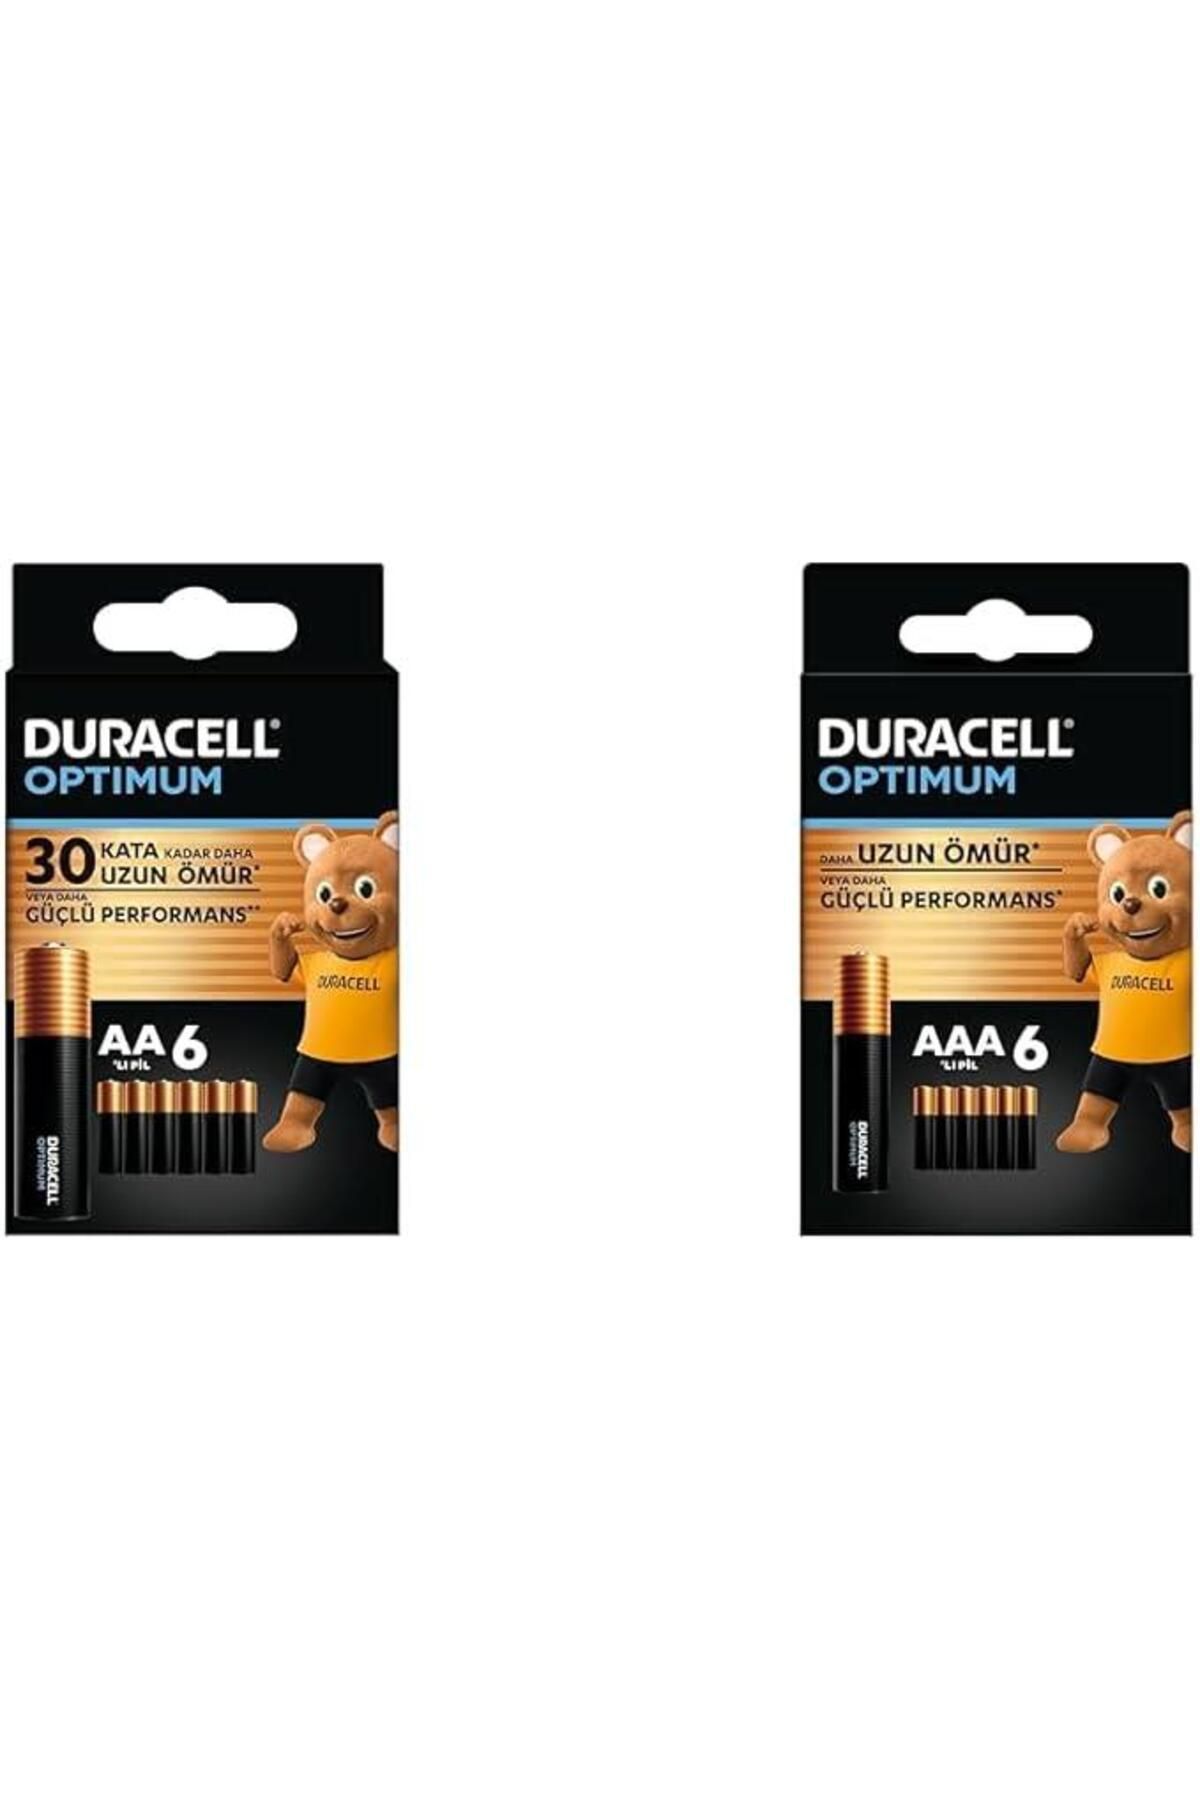 Duracell Optimum AA Alkalin Kalem Piller, 1,5 V LR6/MN1500, 6’lı Paket + Duracell Optimum AAA Alkali